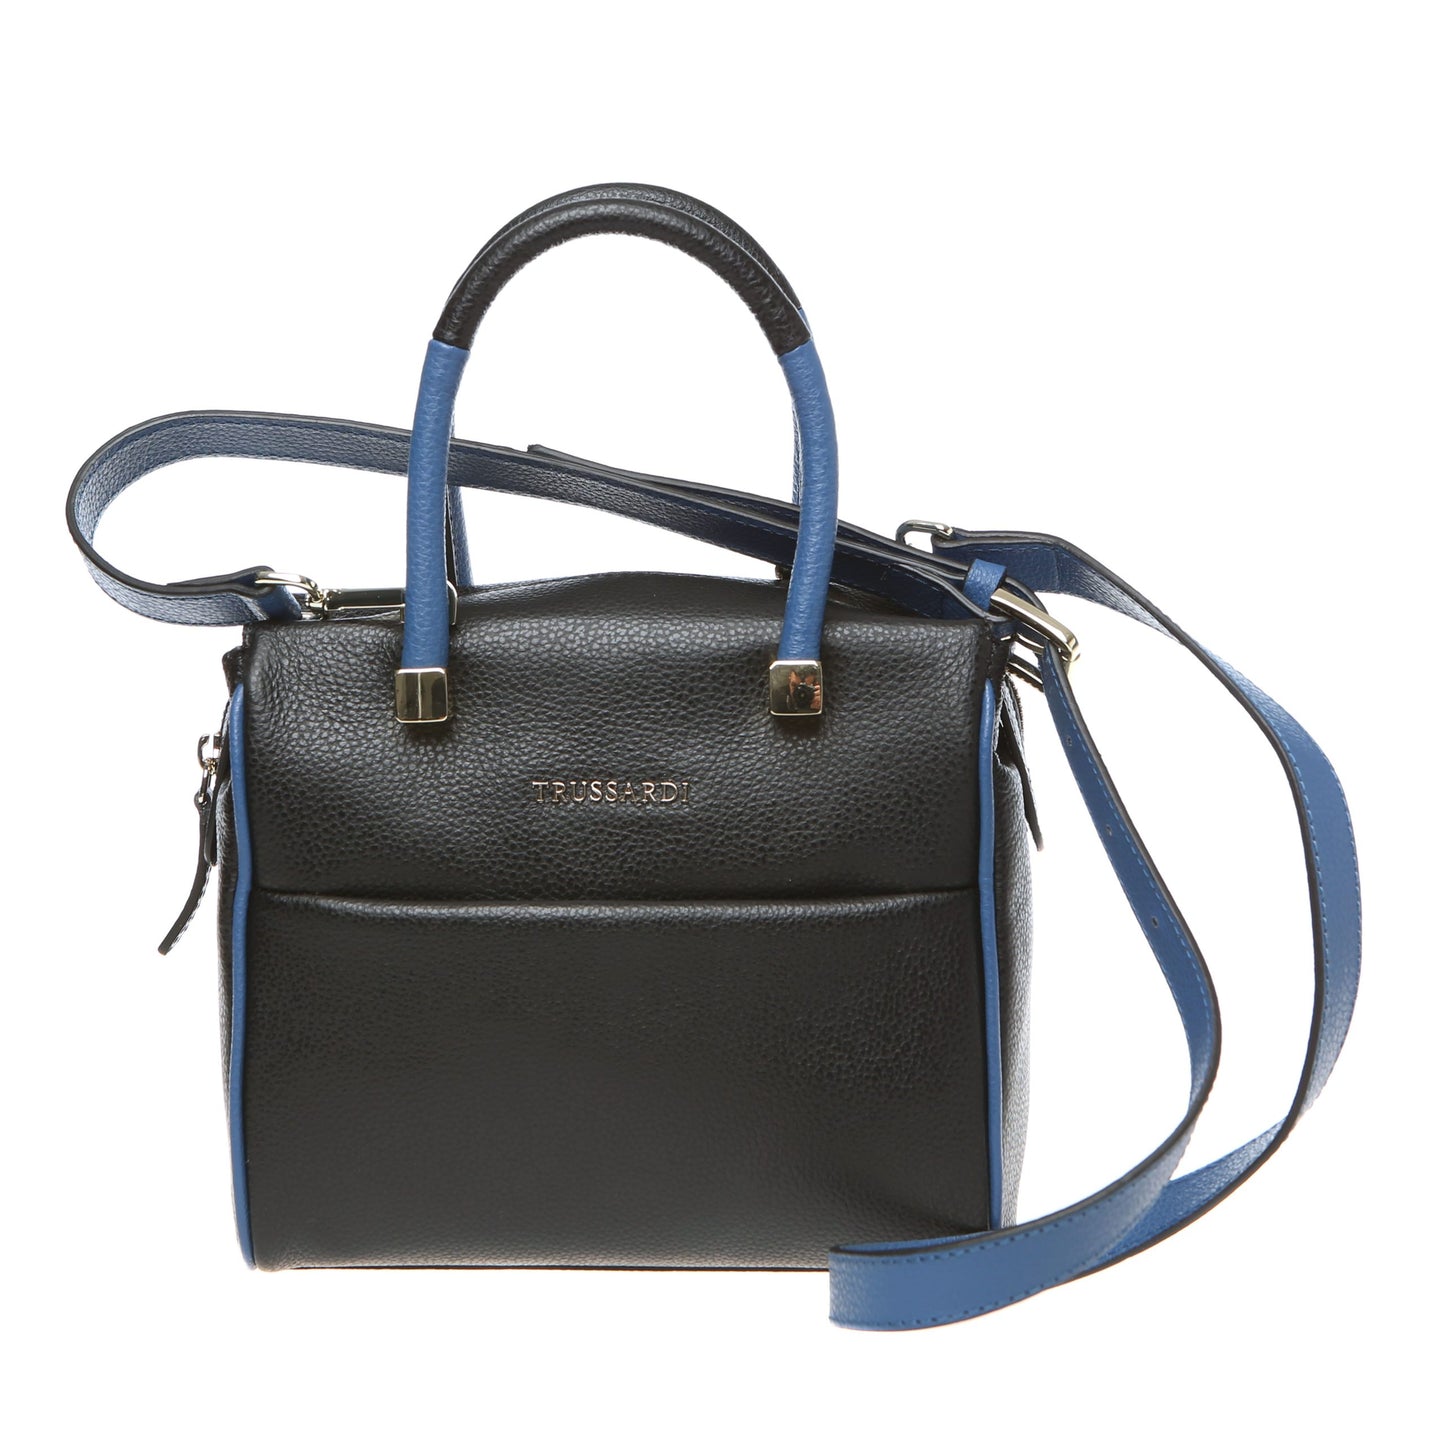 Black- Blue Handbag